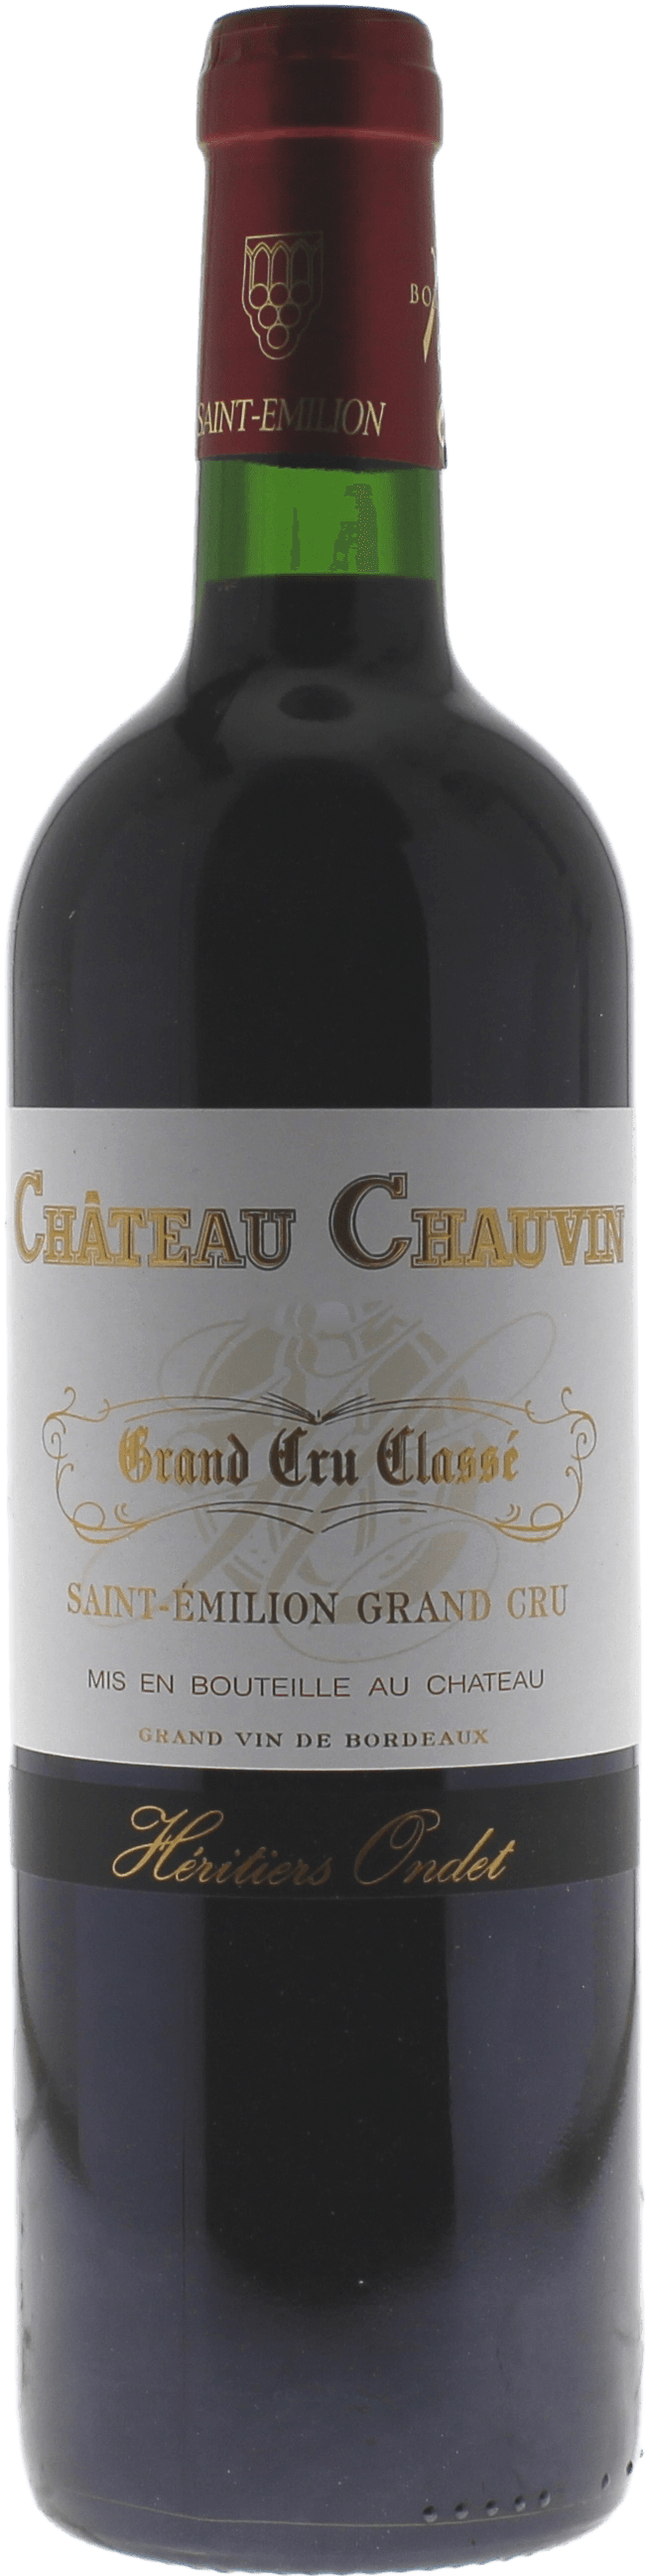 Chauvin 2018 Grand Cru Class Saint-Emilion, Bordeaux rouge